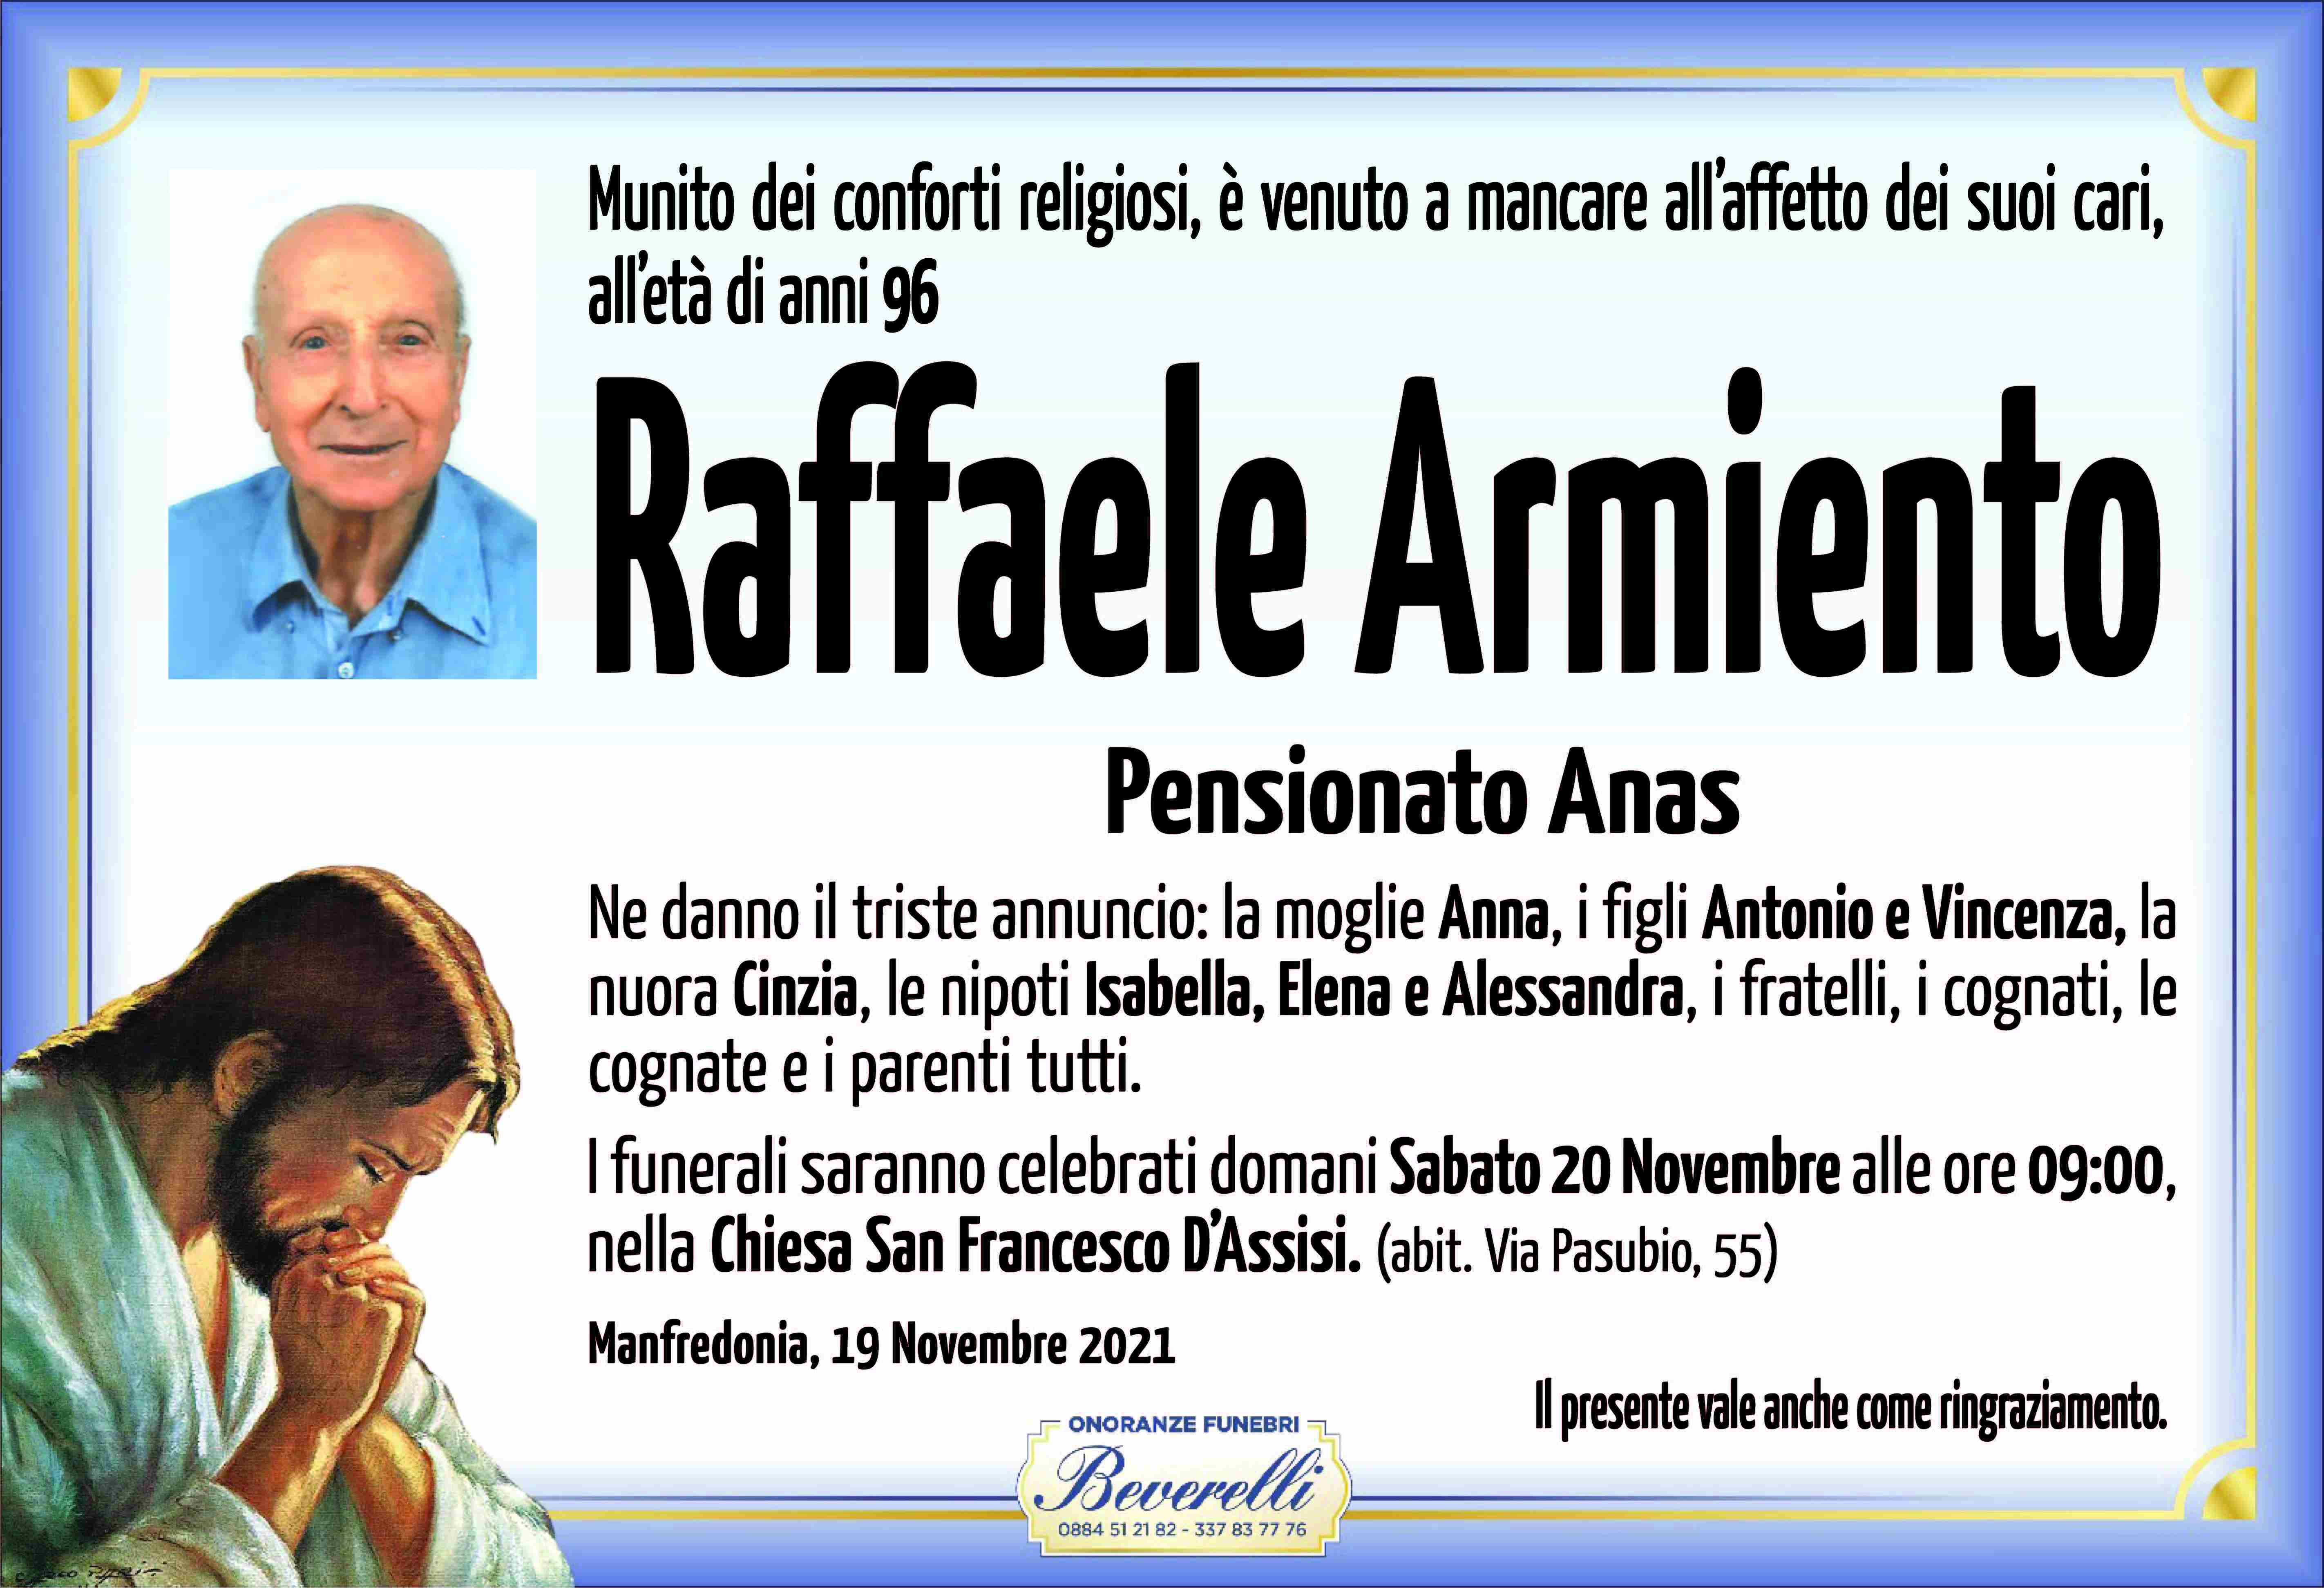 Raffaele Armiento